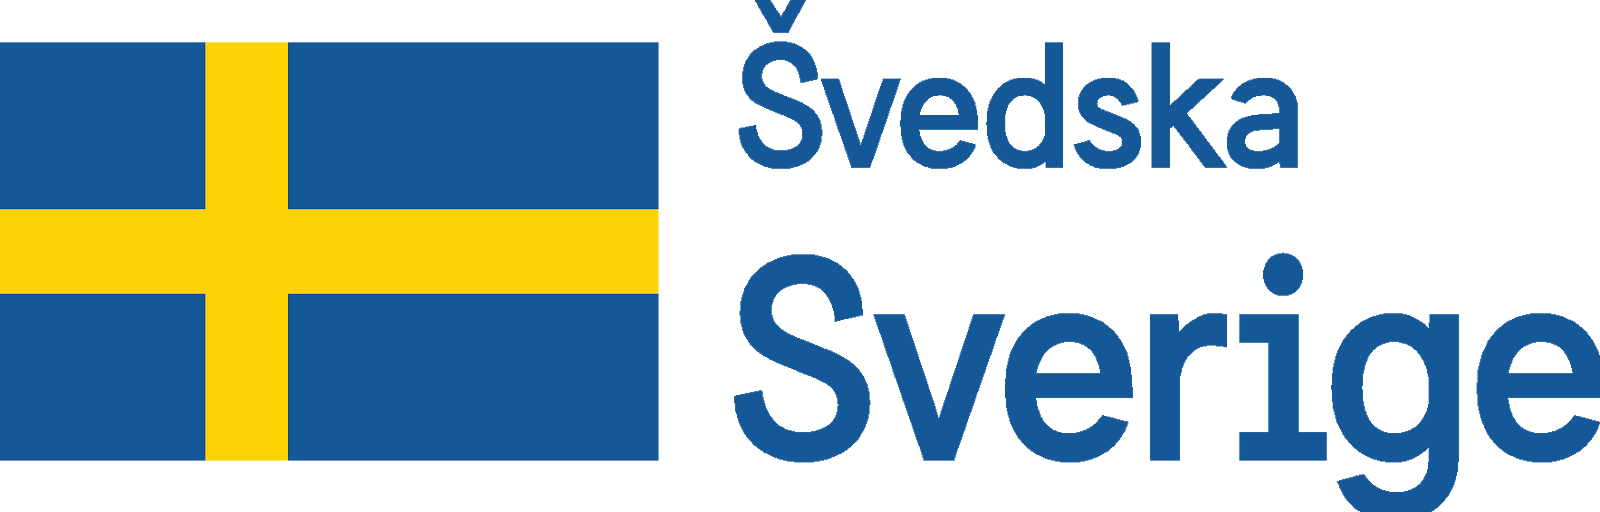 svedska_sverige